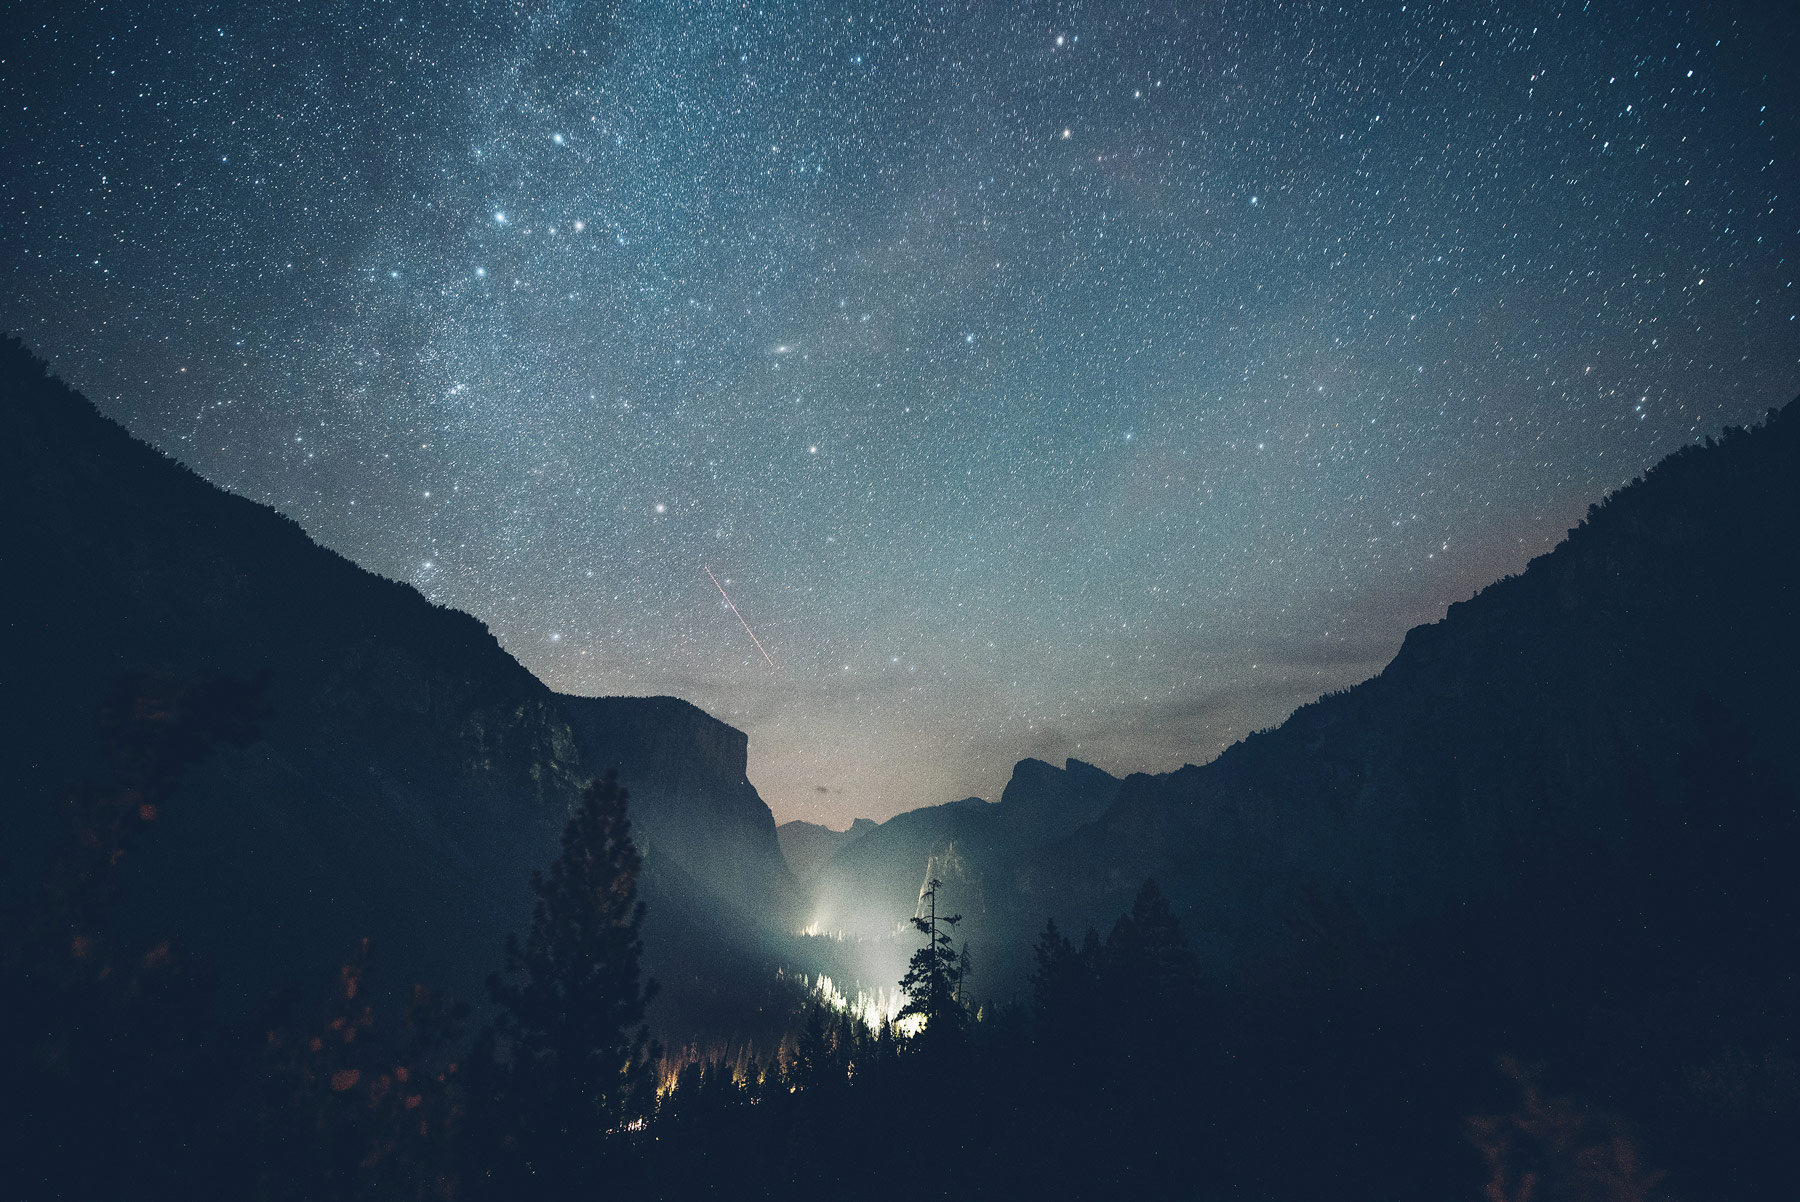 Yosemite by Night